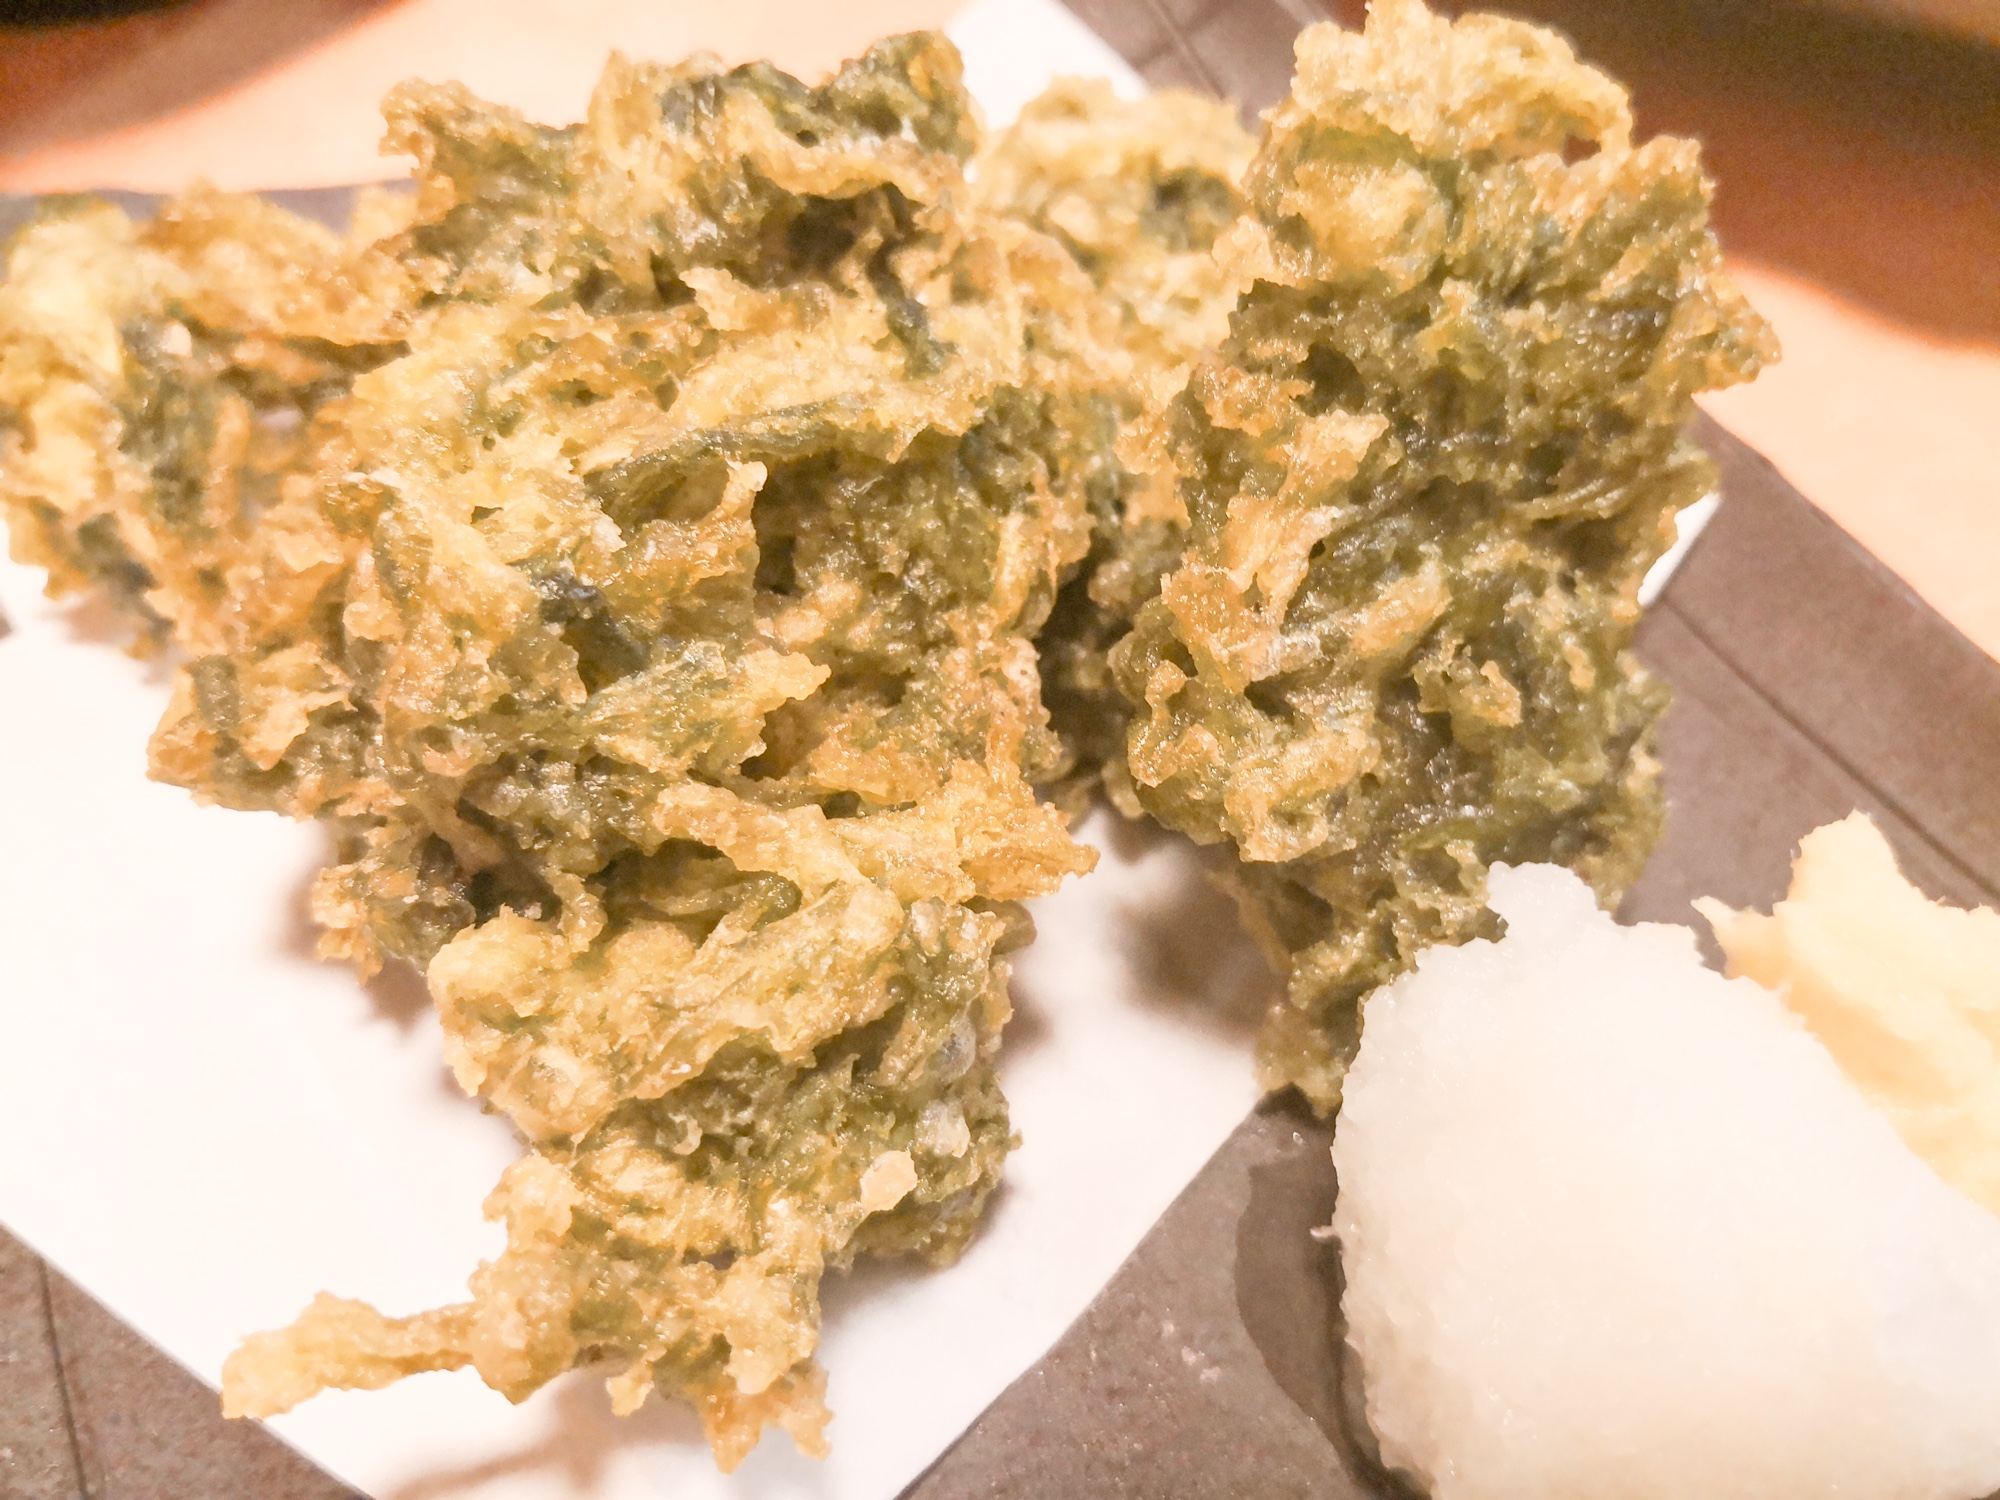 八丈島 池袋 島寿司 あしたばの天ぷら 八丈島の郷土料理を池袋で楽しむ 節約プレミアムな旅行ブログ